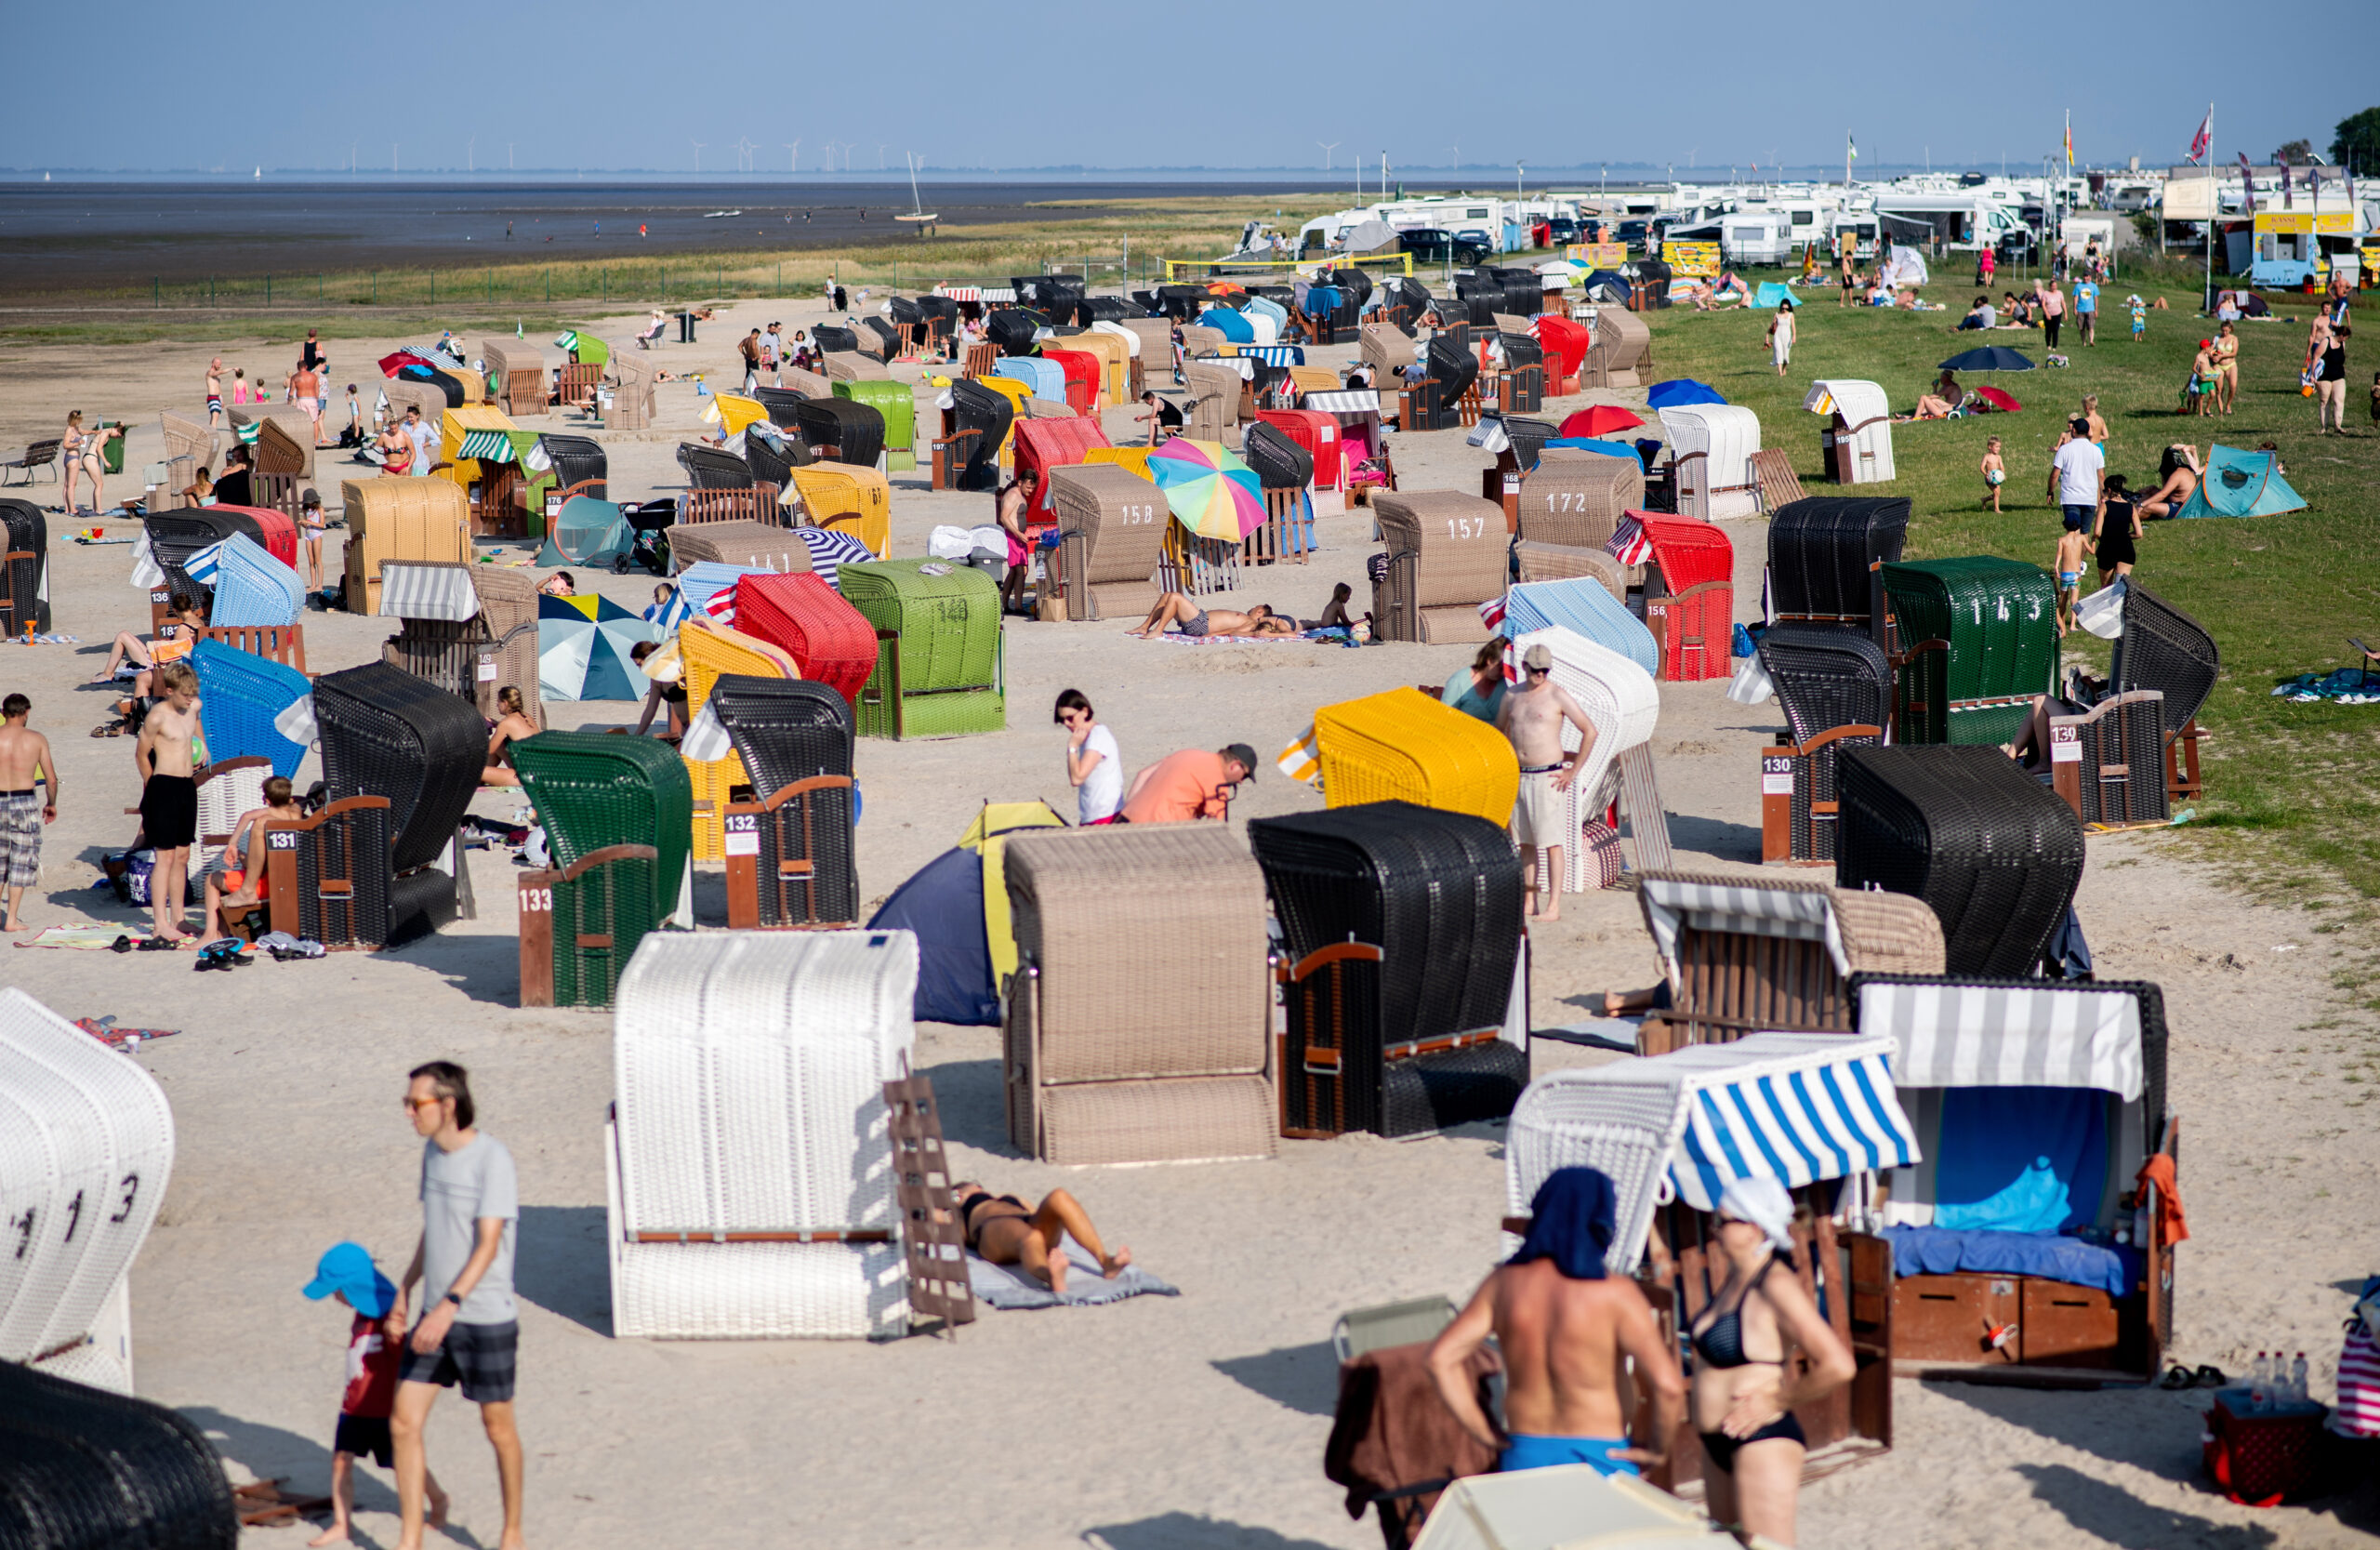 Zahlreiche Touristen sitzen bei sommerlichen Temperaturen in bunten Strandkörben am Strand von Dangast am Jadebusen.